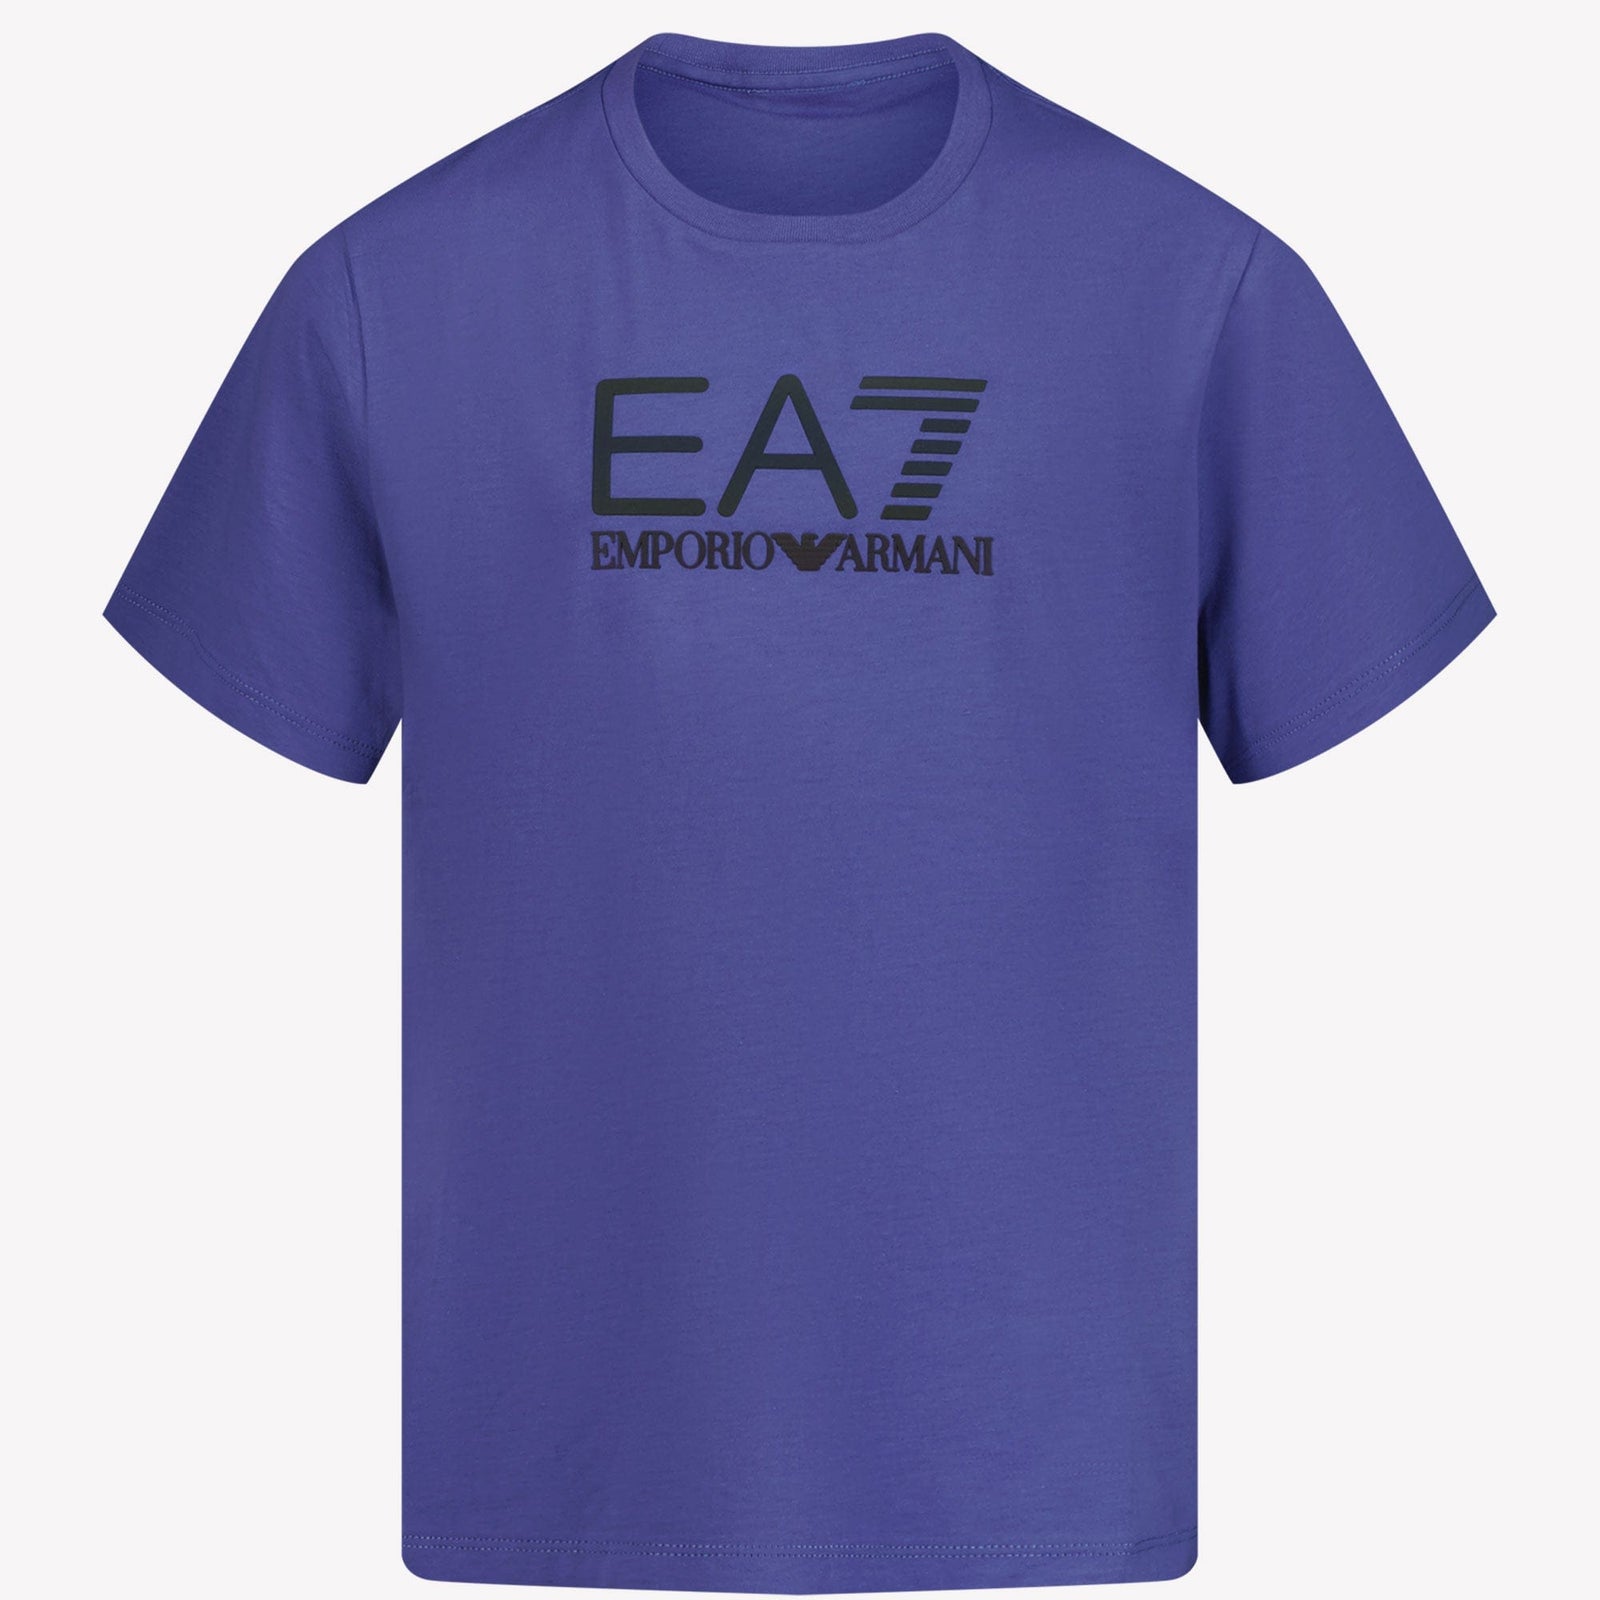 Ea7 Kinder Jongens T-shirt Blauw 4Y